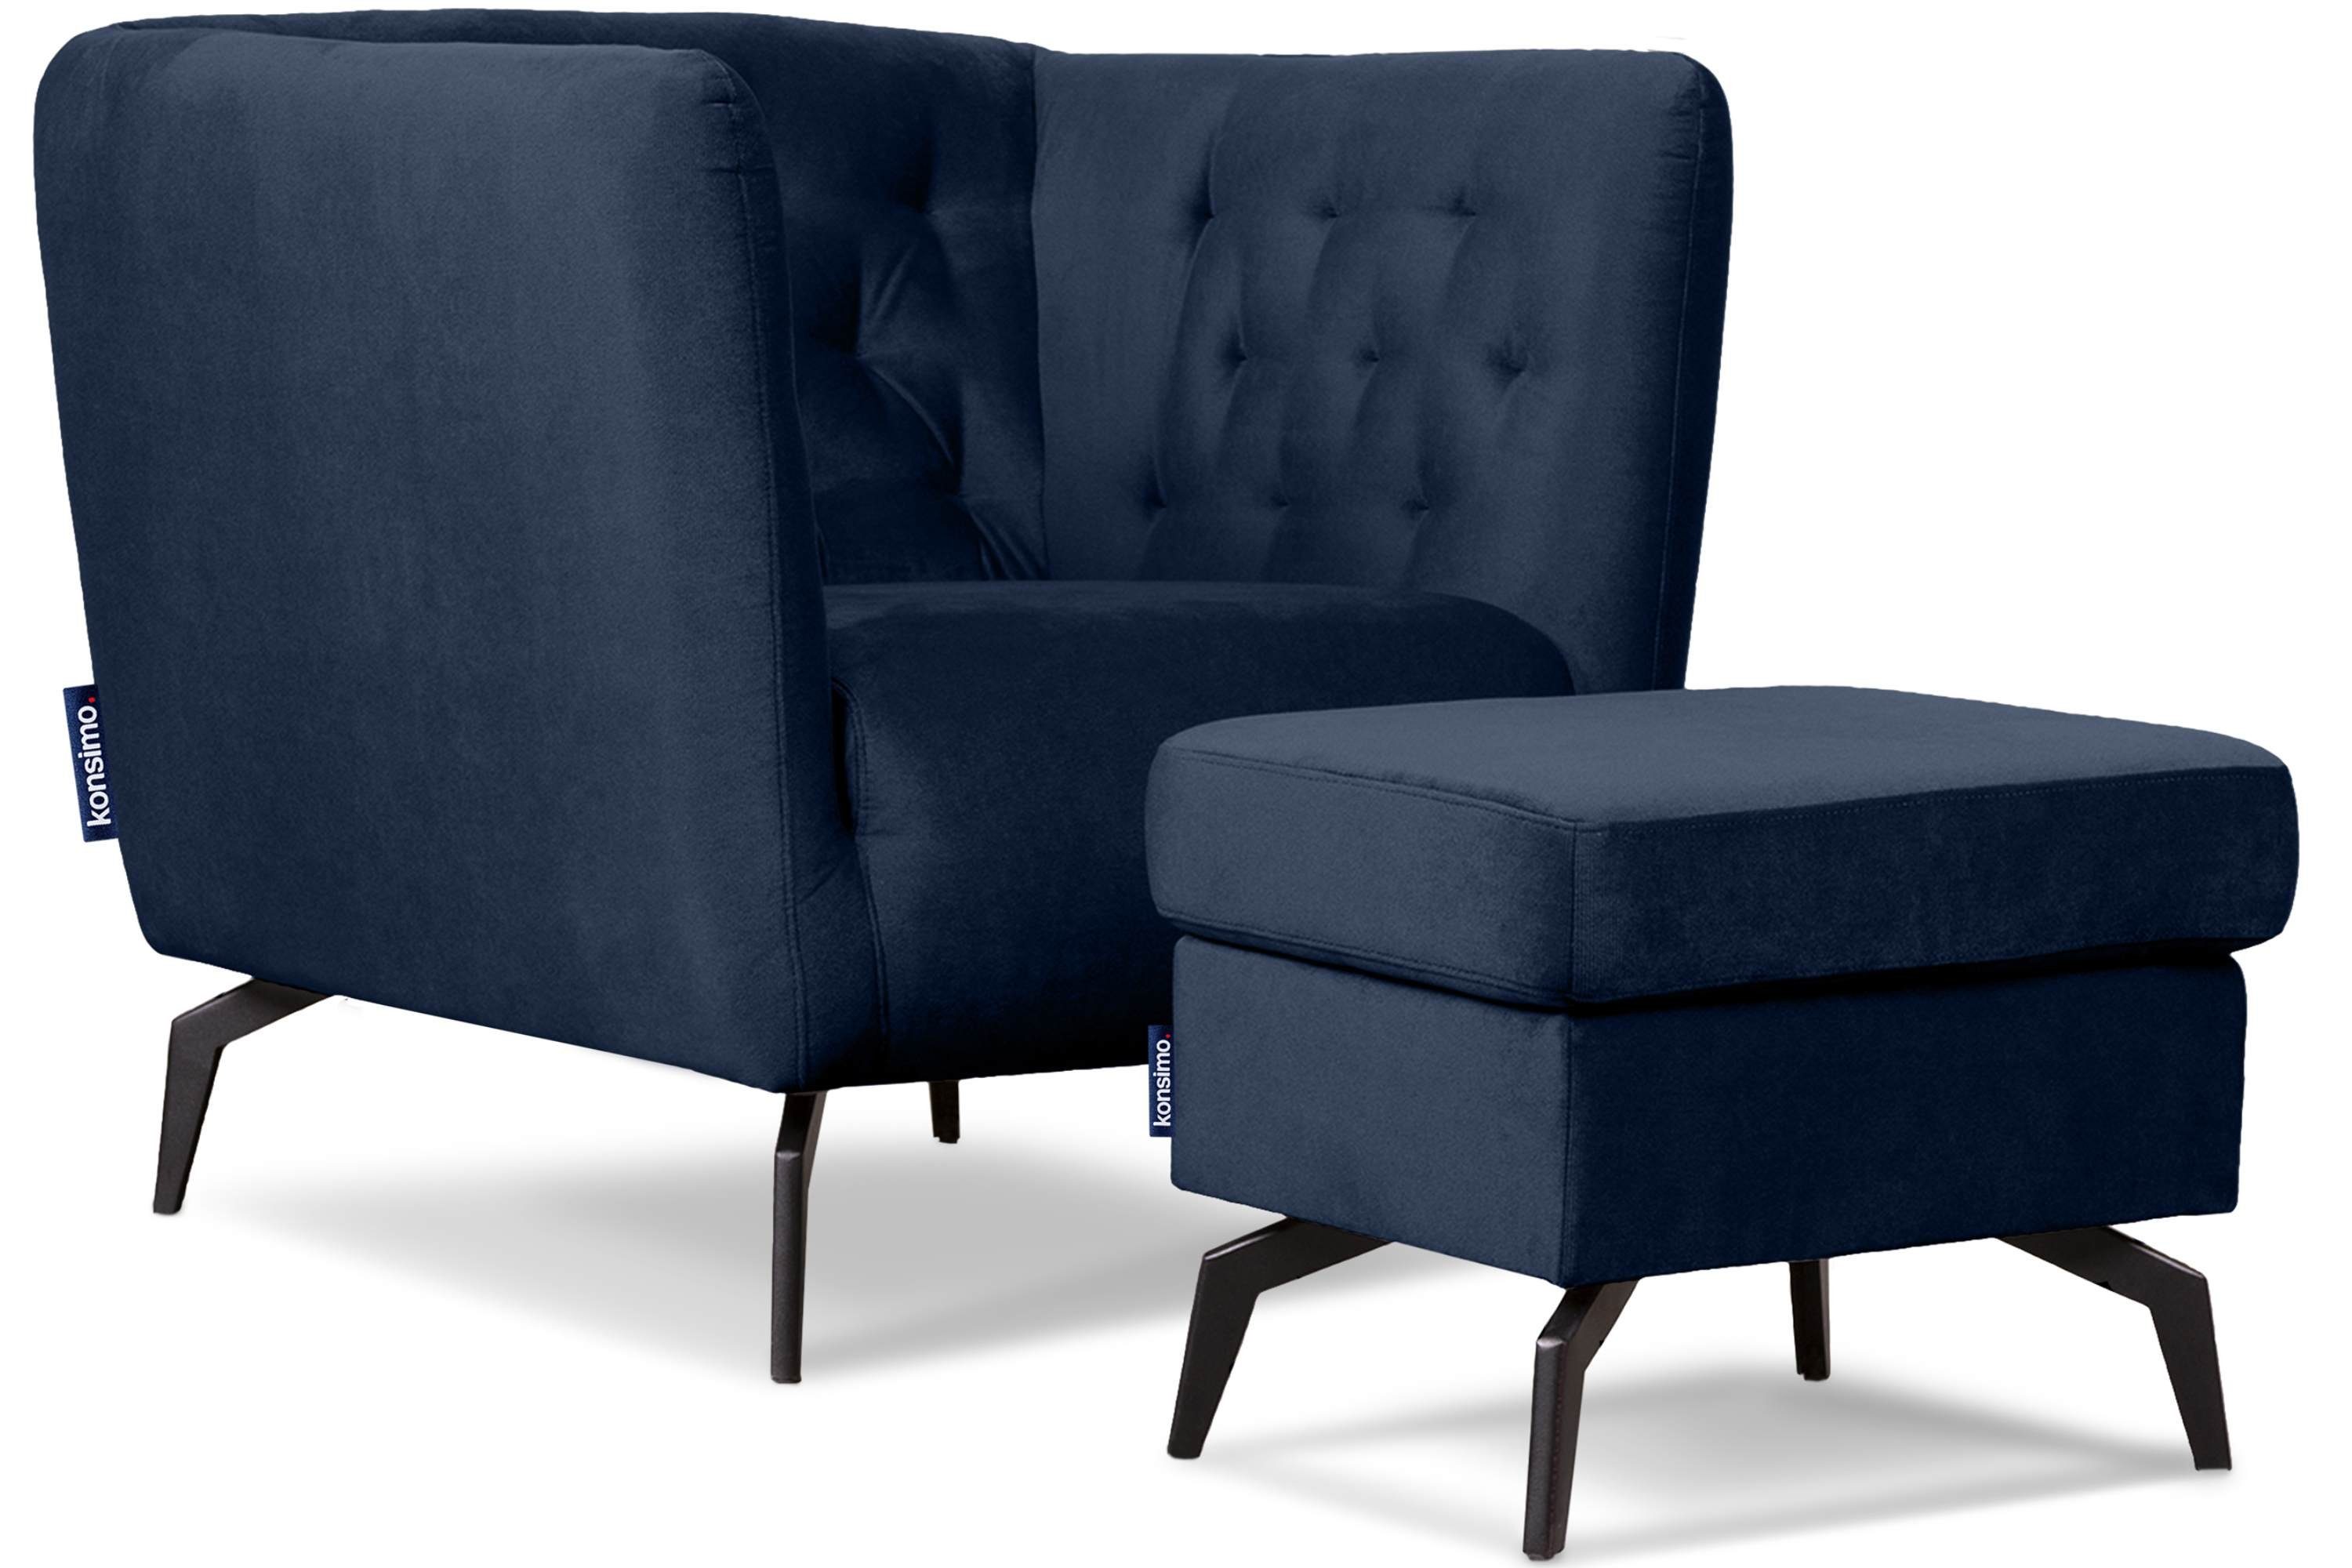 Metallfüßen, | im Sessel marineblau CORDI hohen Gesteppter Konsimo Sitz und marineblau Feder Sessel, gewellte Schaumstoff auf